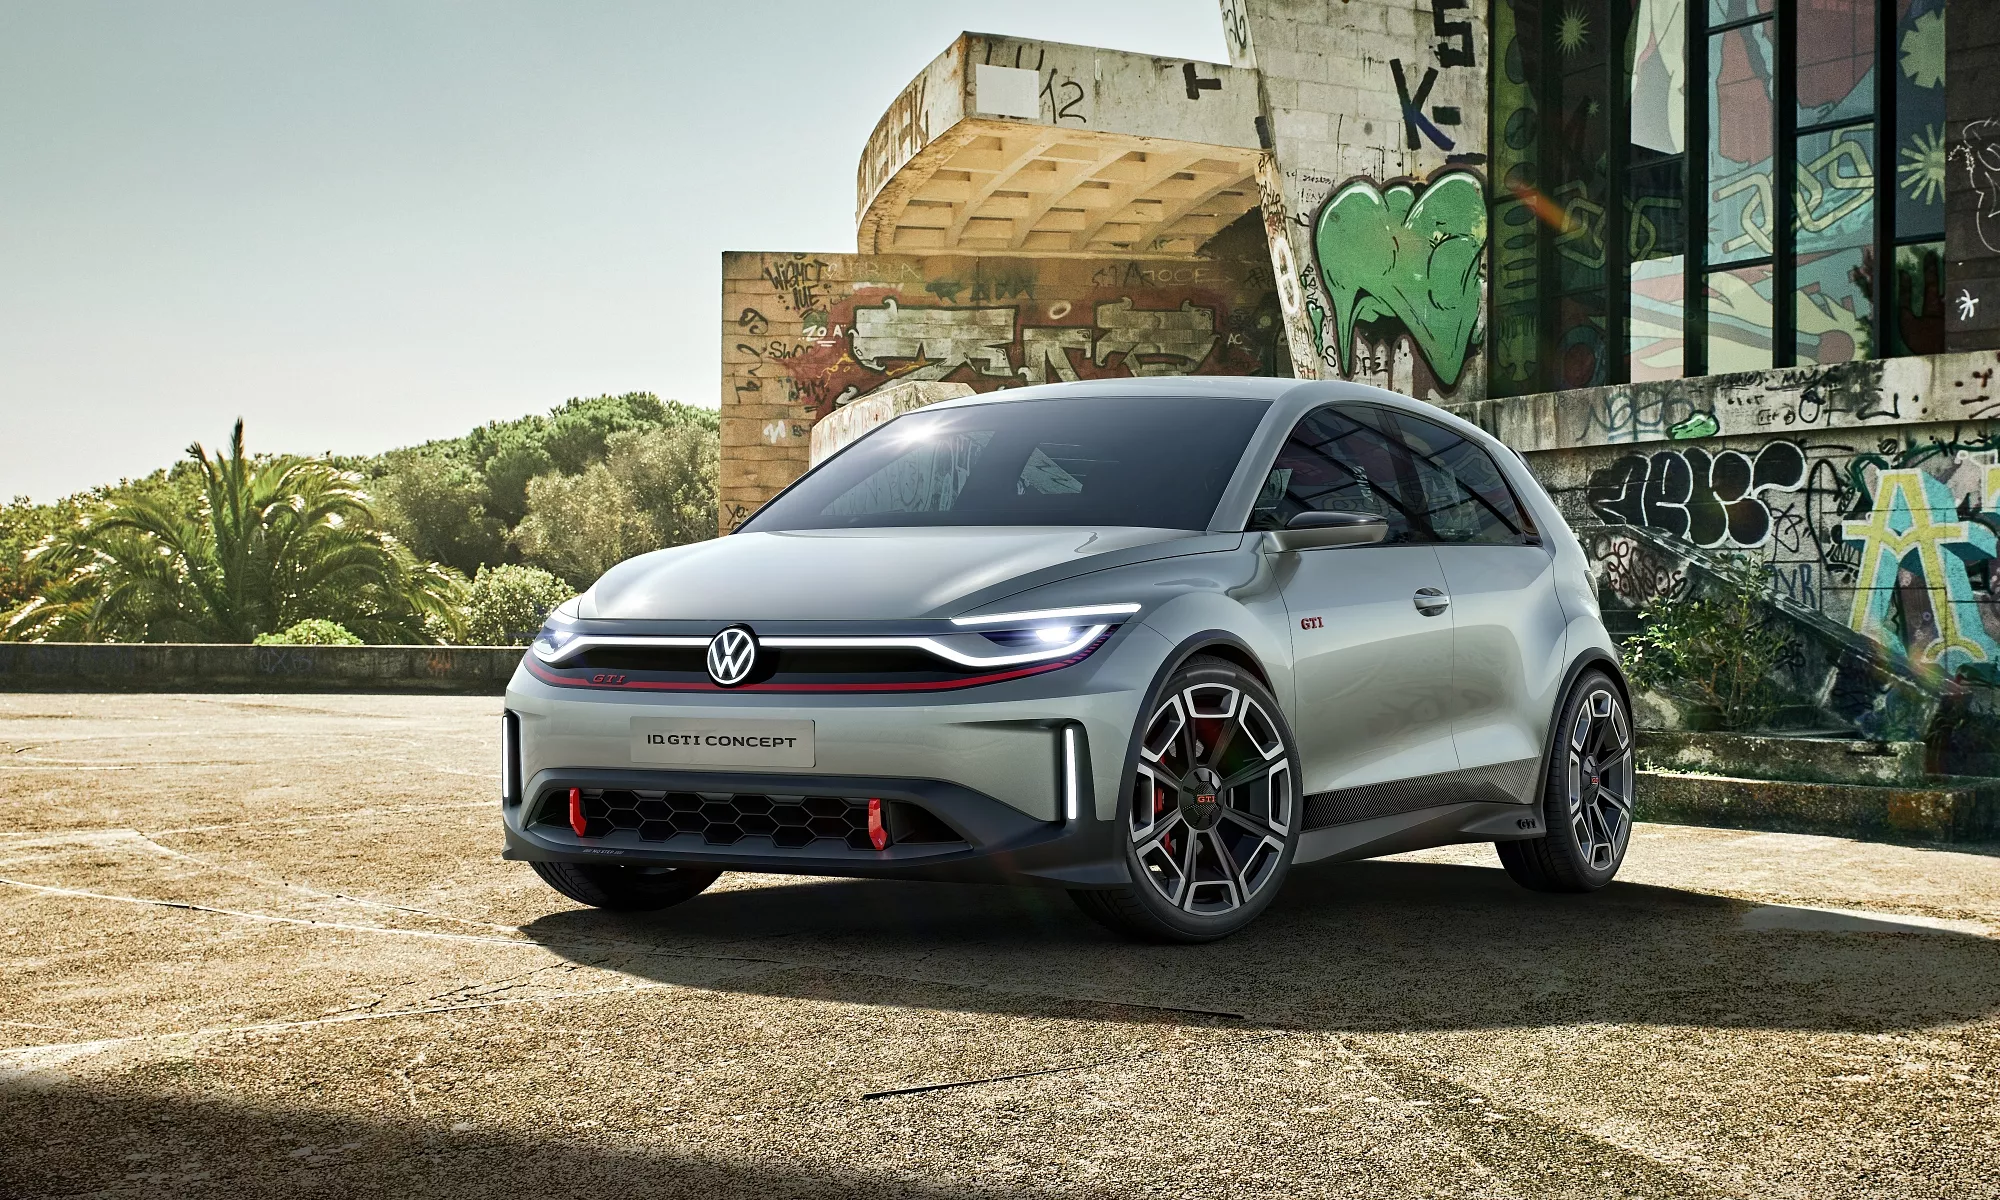 Hace unos días, Volkswagen presentó el ID.GTI Concept que en unos años se convertirá en realidad.